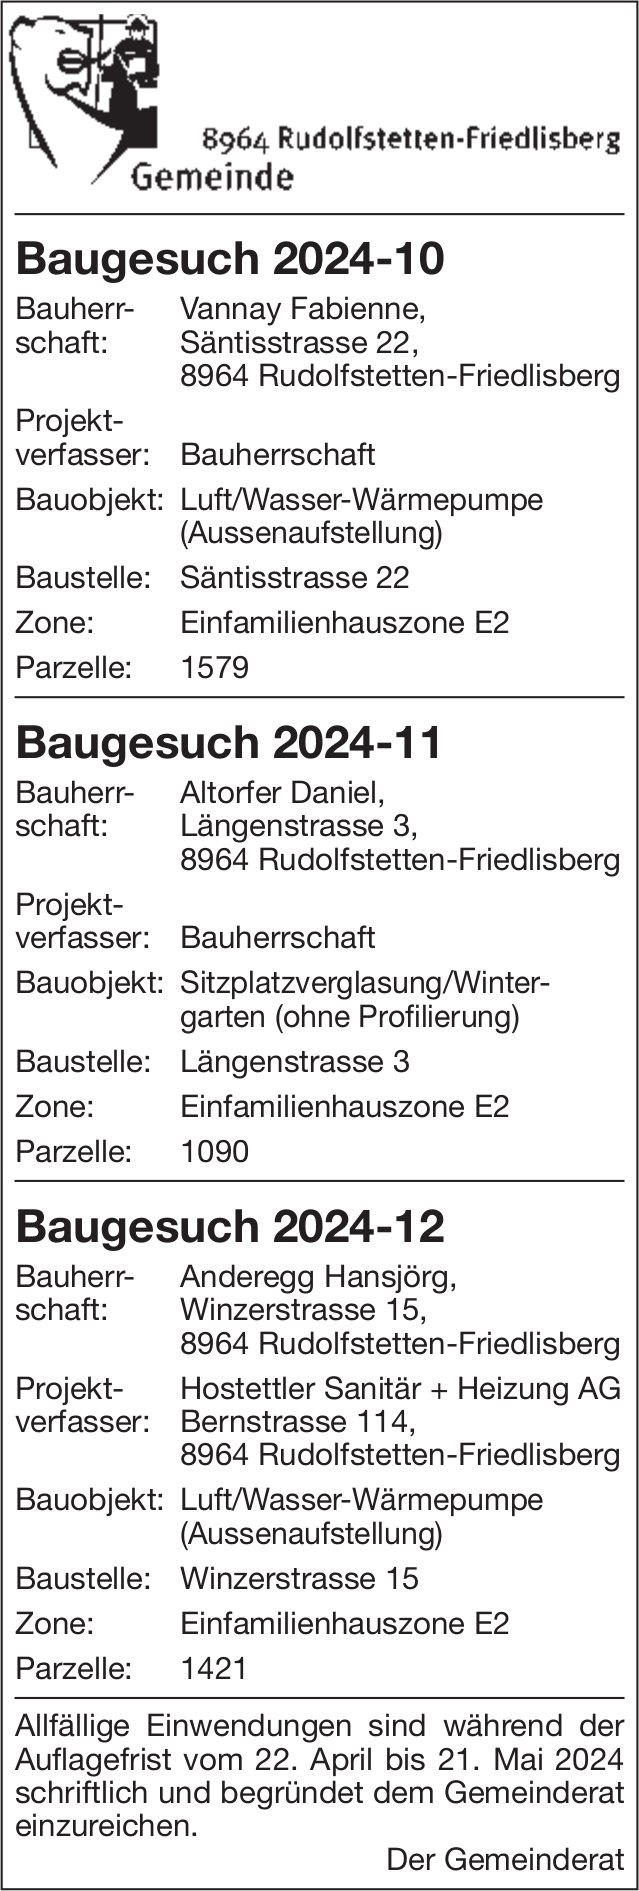 Baugesuche, Rudolfstetten-Friedlisberg - Vannay Fabienne